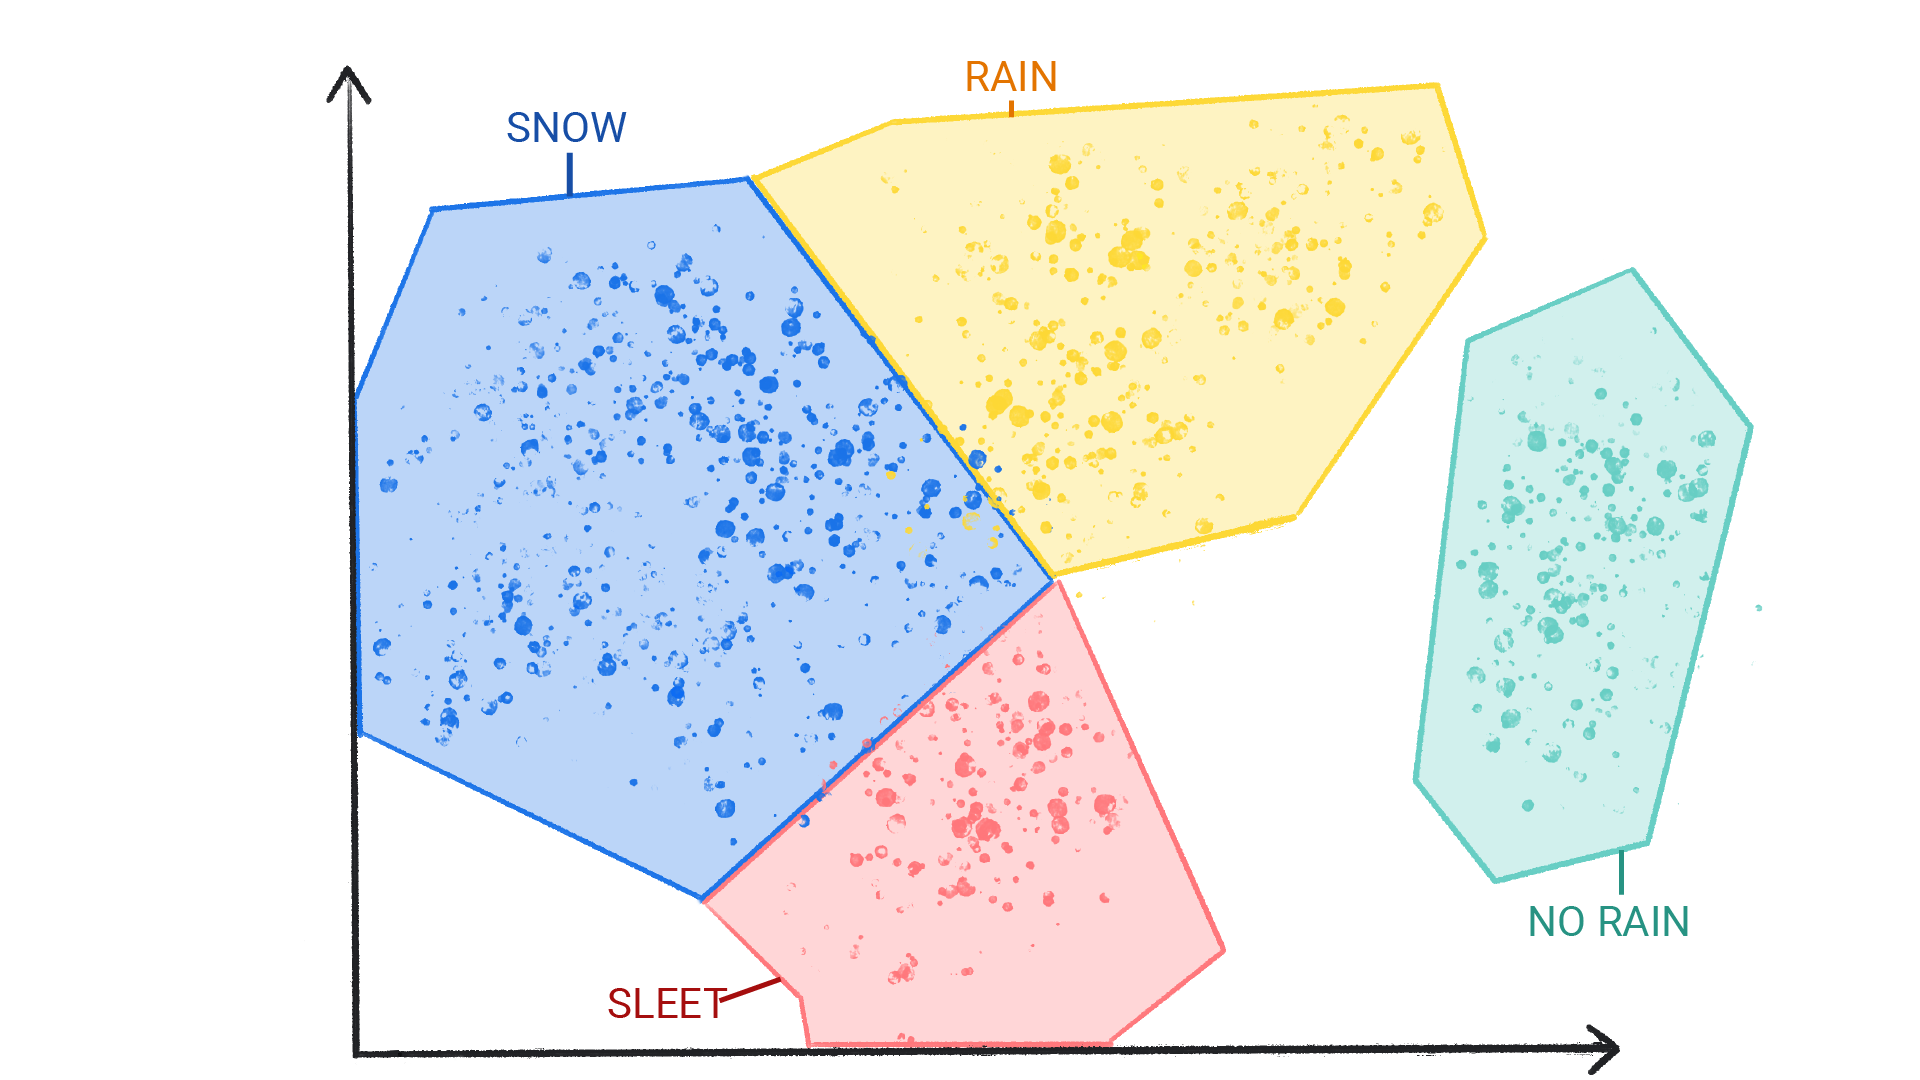 अलग-अलग क्लस्टर में रंगीन बिंदुओं को दिखाने वाली इमेज. इन बिंदुओं पर बर्फ़, बारिश, ओले, और कोई बारिश न होने का लेबल दिया गया है. ये बिंदु एक-दूसरे के आकार में दिख रहे हैं और बॉर्डर में लगे हैं.